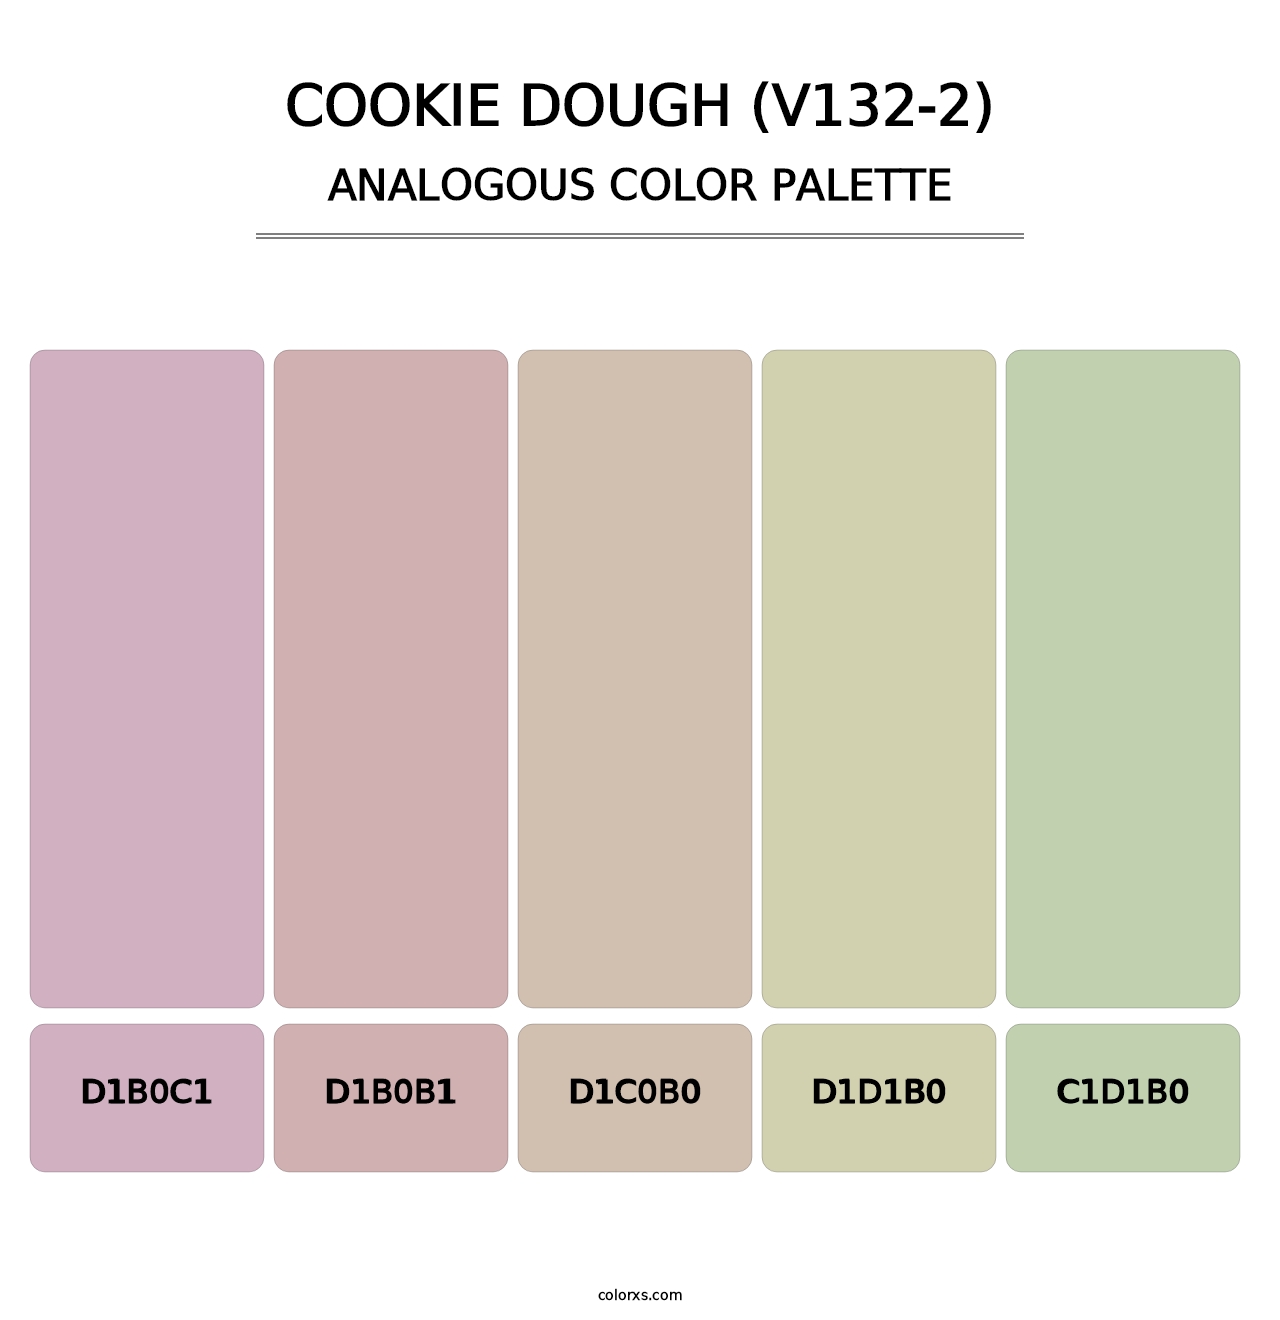 Cookie Dough (V132-2) - Analogous Color Palette